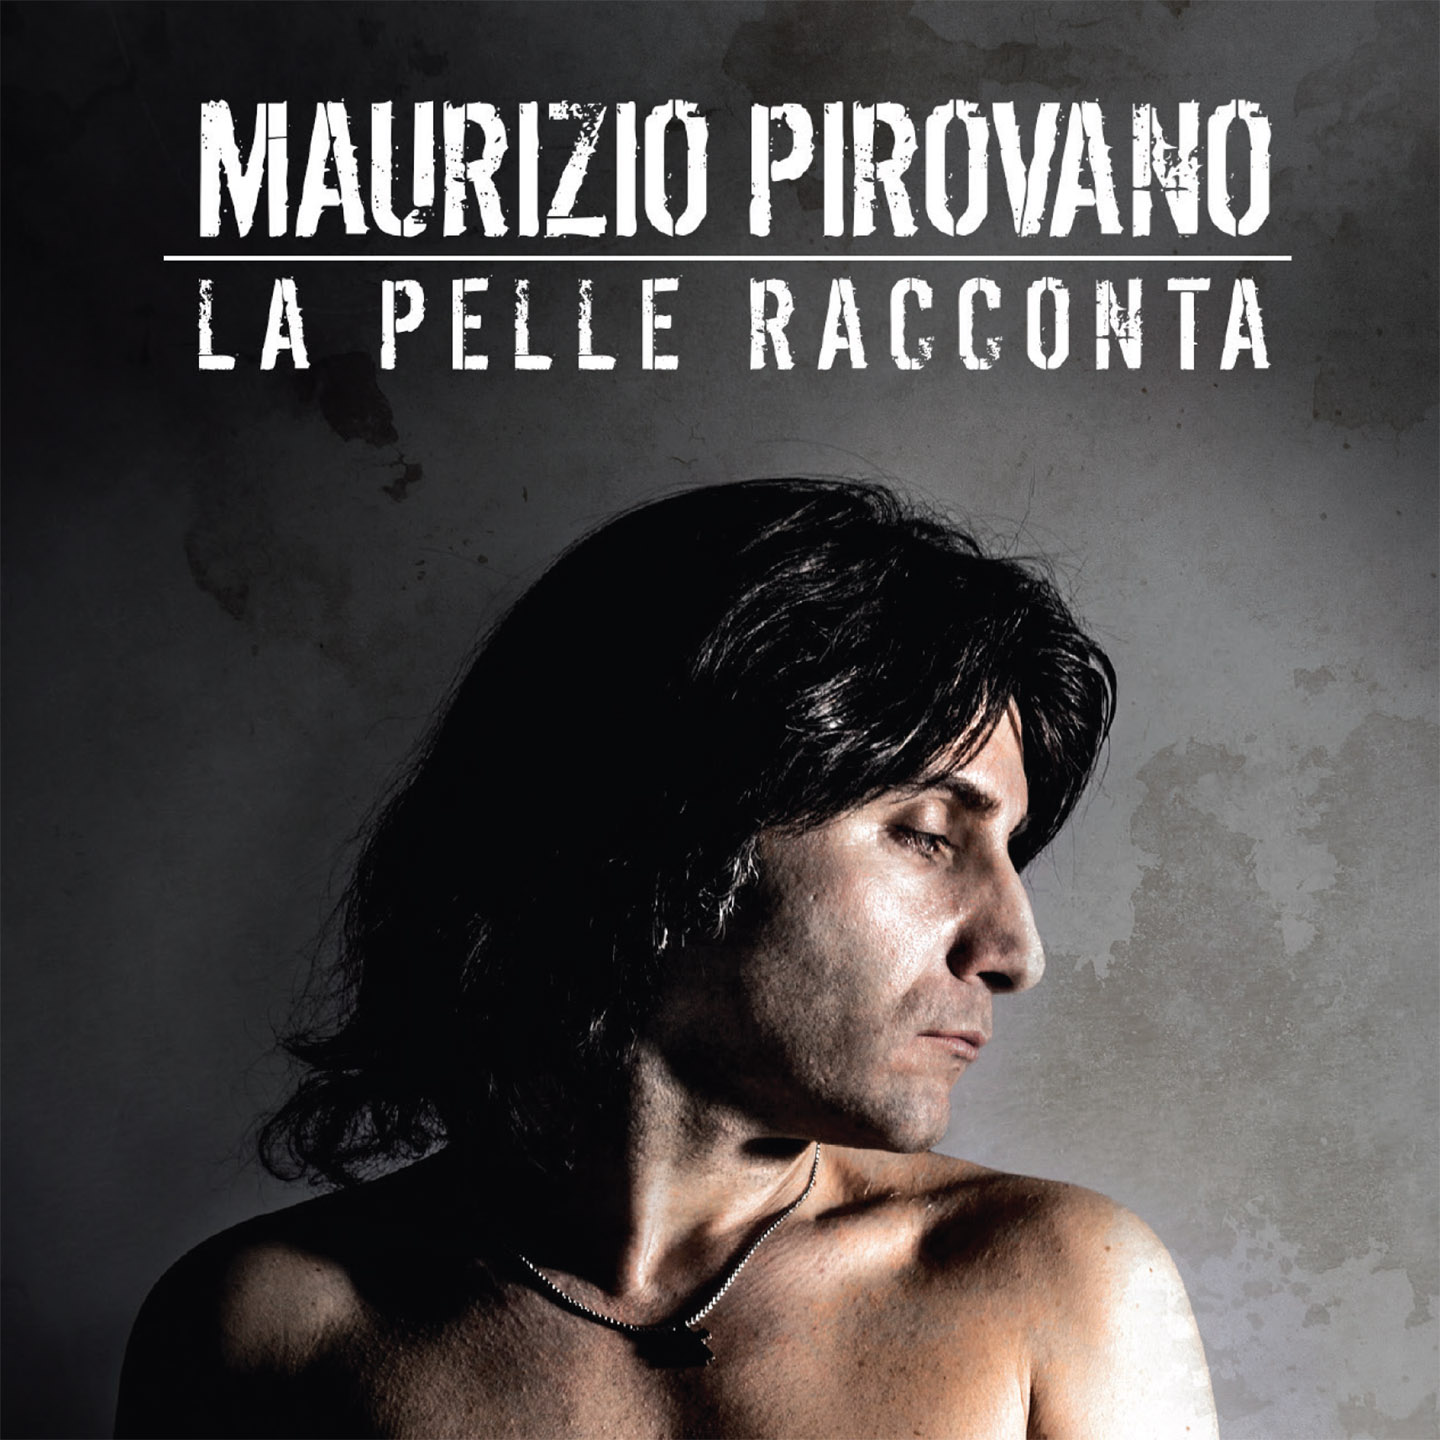 Maurizio Pirovano presenta il secondo singolo estratto dall’omonimo album “La Pelle Racconta” (Latlantide – 2015), nuovo lavoro discografico di rock graffiante. In un epoca sempre più virtuale e sempre meno […]